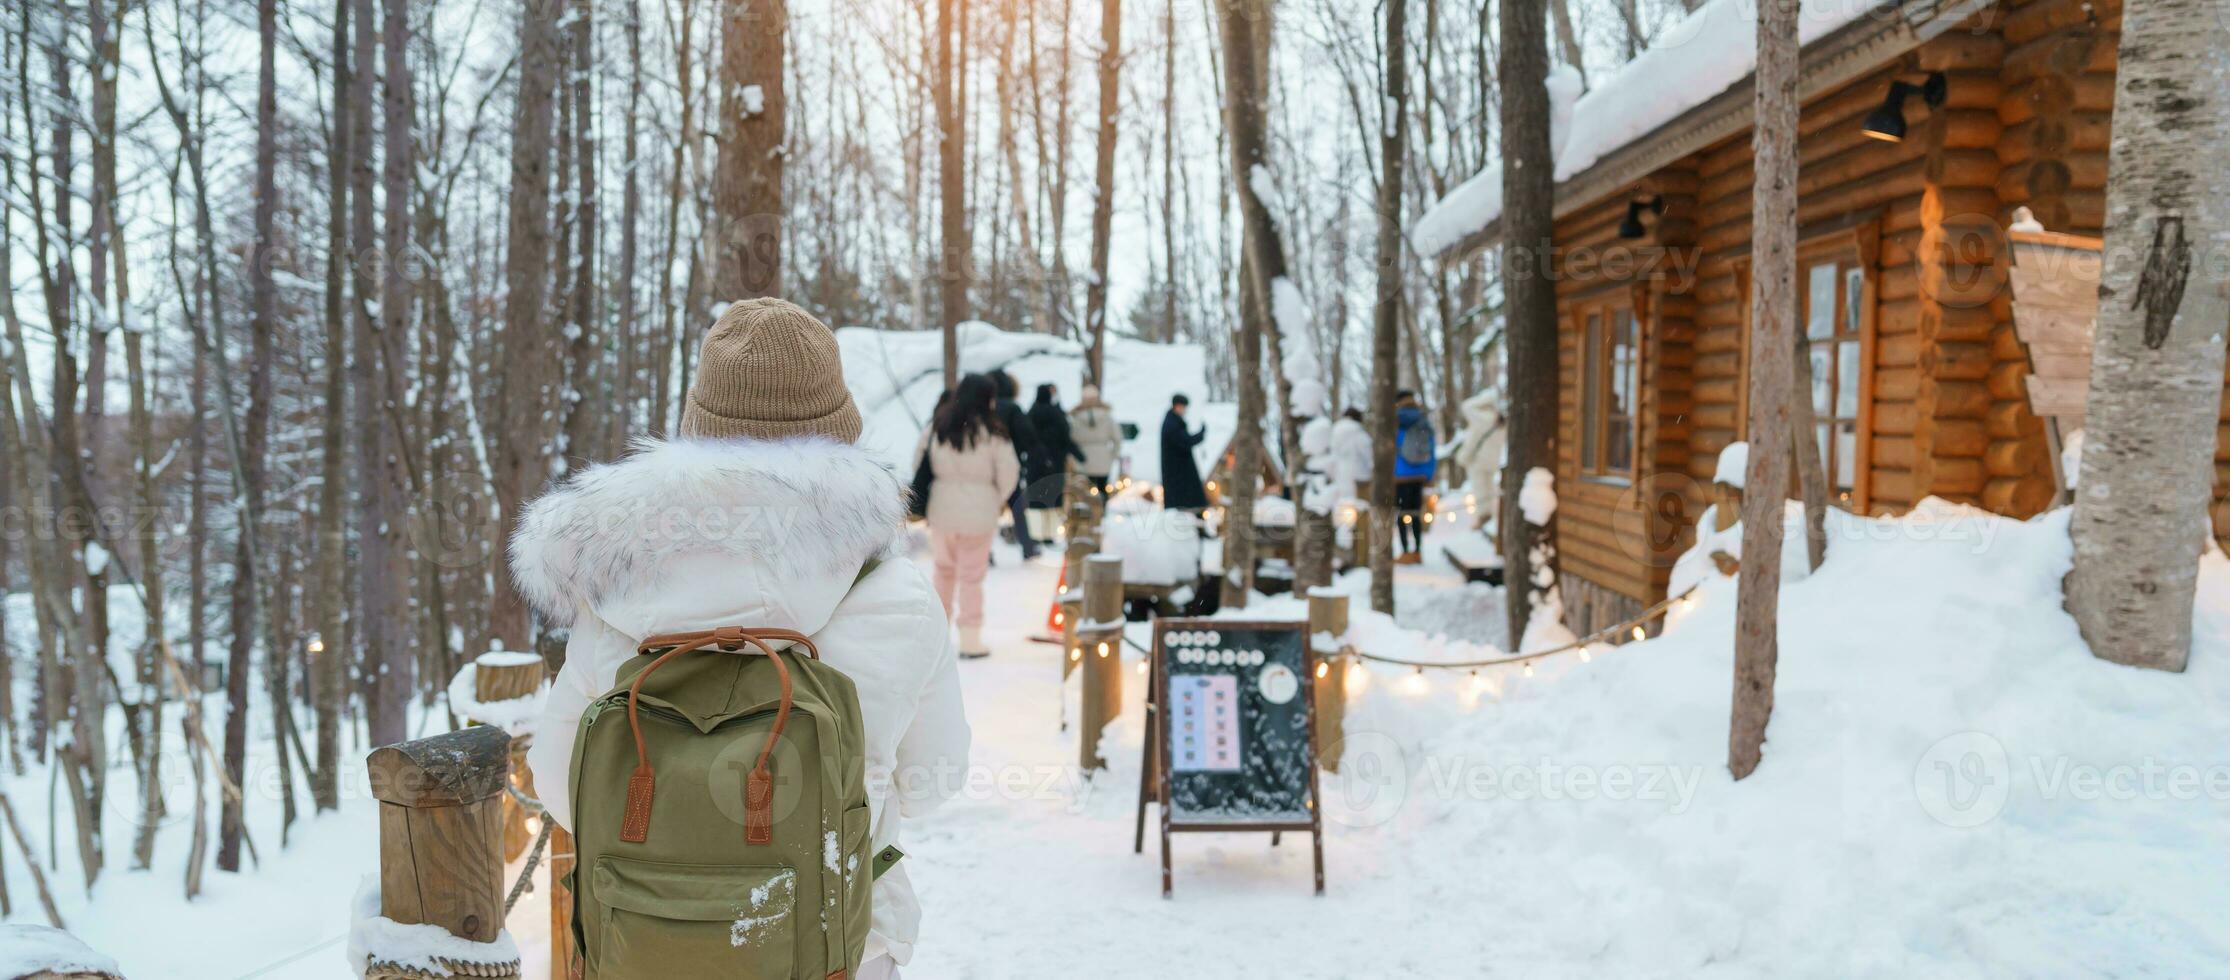 vrouw toerist bezoekende in furano, reiziger in trui bezienswaardigheden bekijken Ningle terras huisjes met sneeuw in winter. mijlpaal en populair voor attracties in hokkaido, Japan. reizen en vakantie concept foto